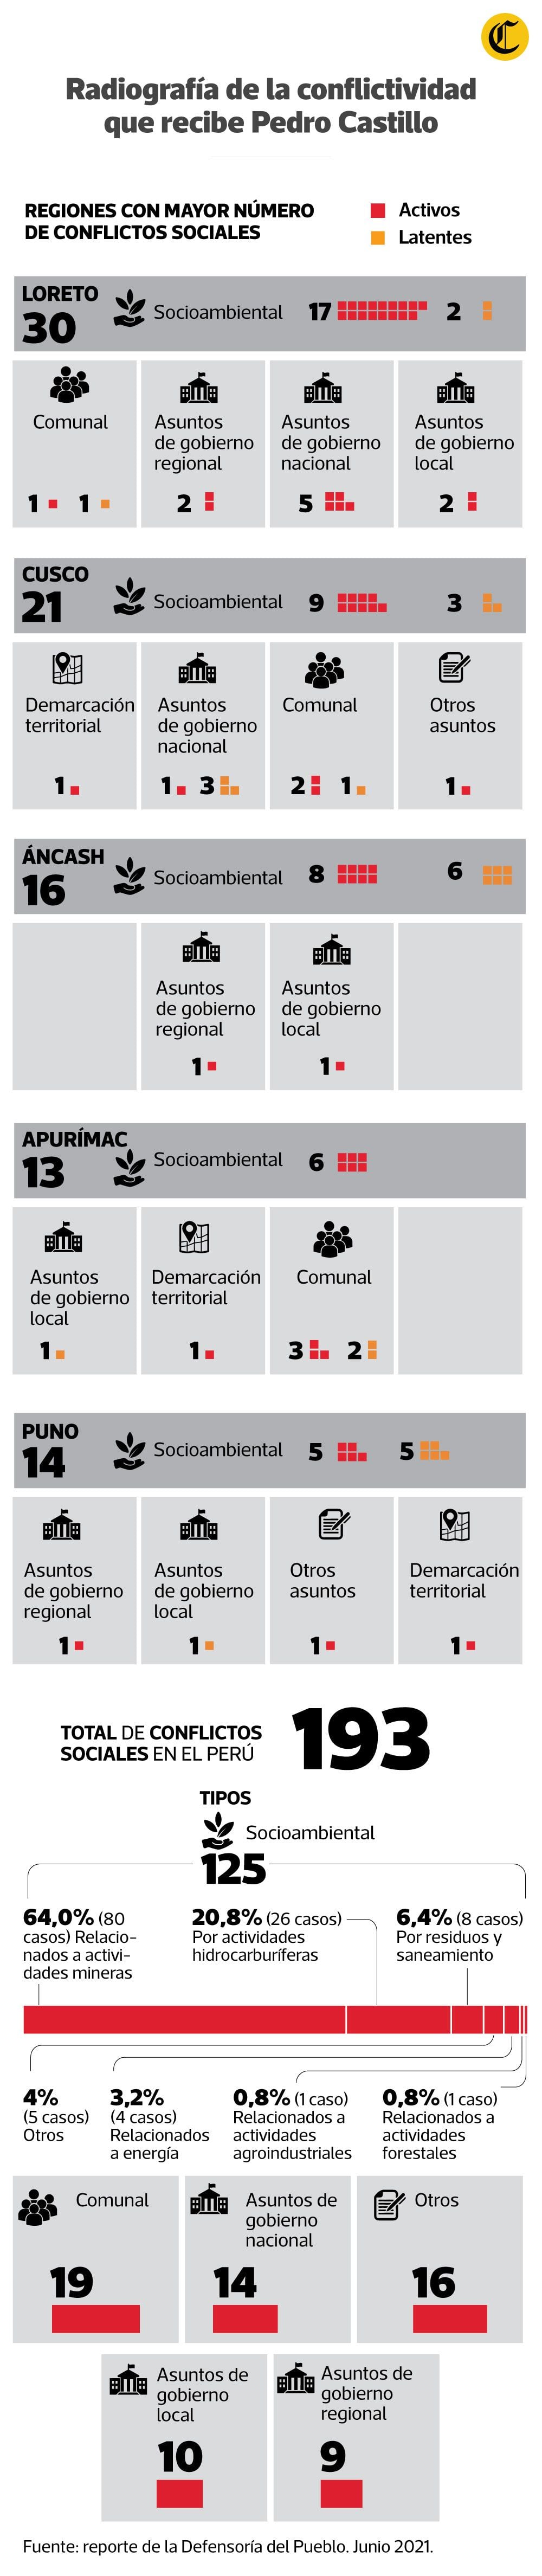 La Defensoría del Pueblo reporta 193 conflictos sociales en el Perú. (Infografía Jean Izquierdo)